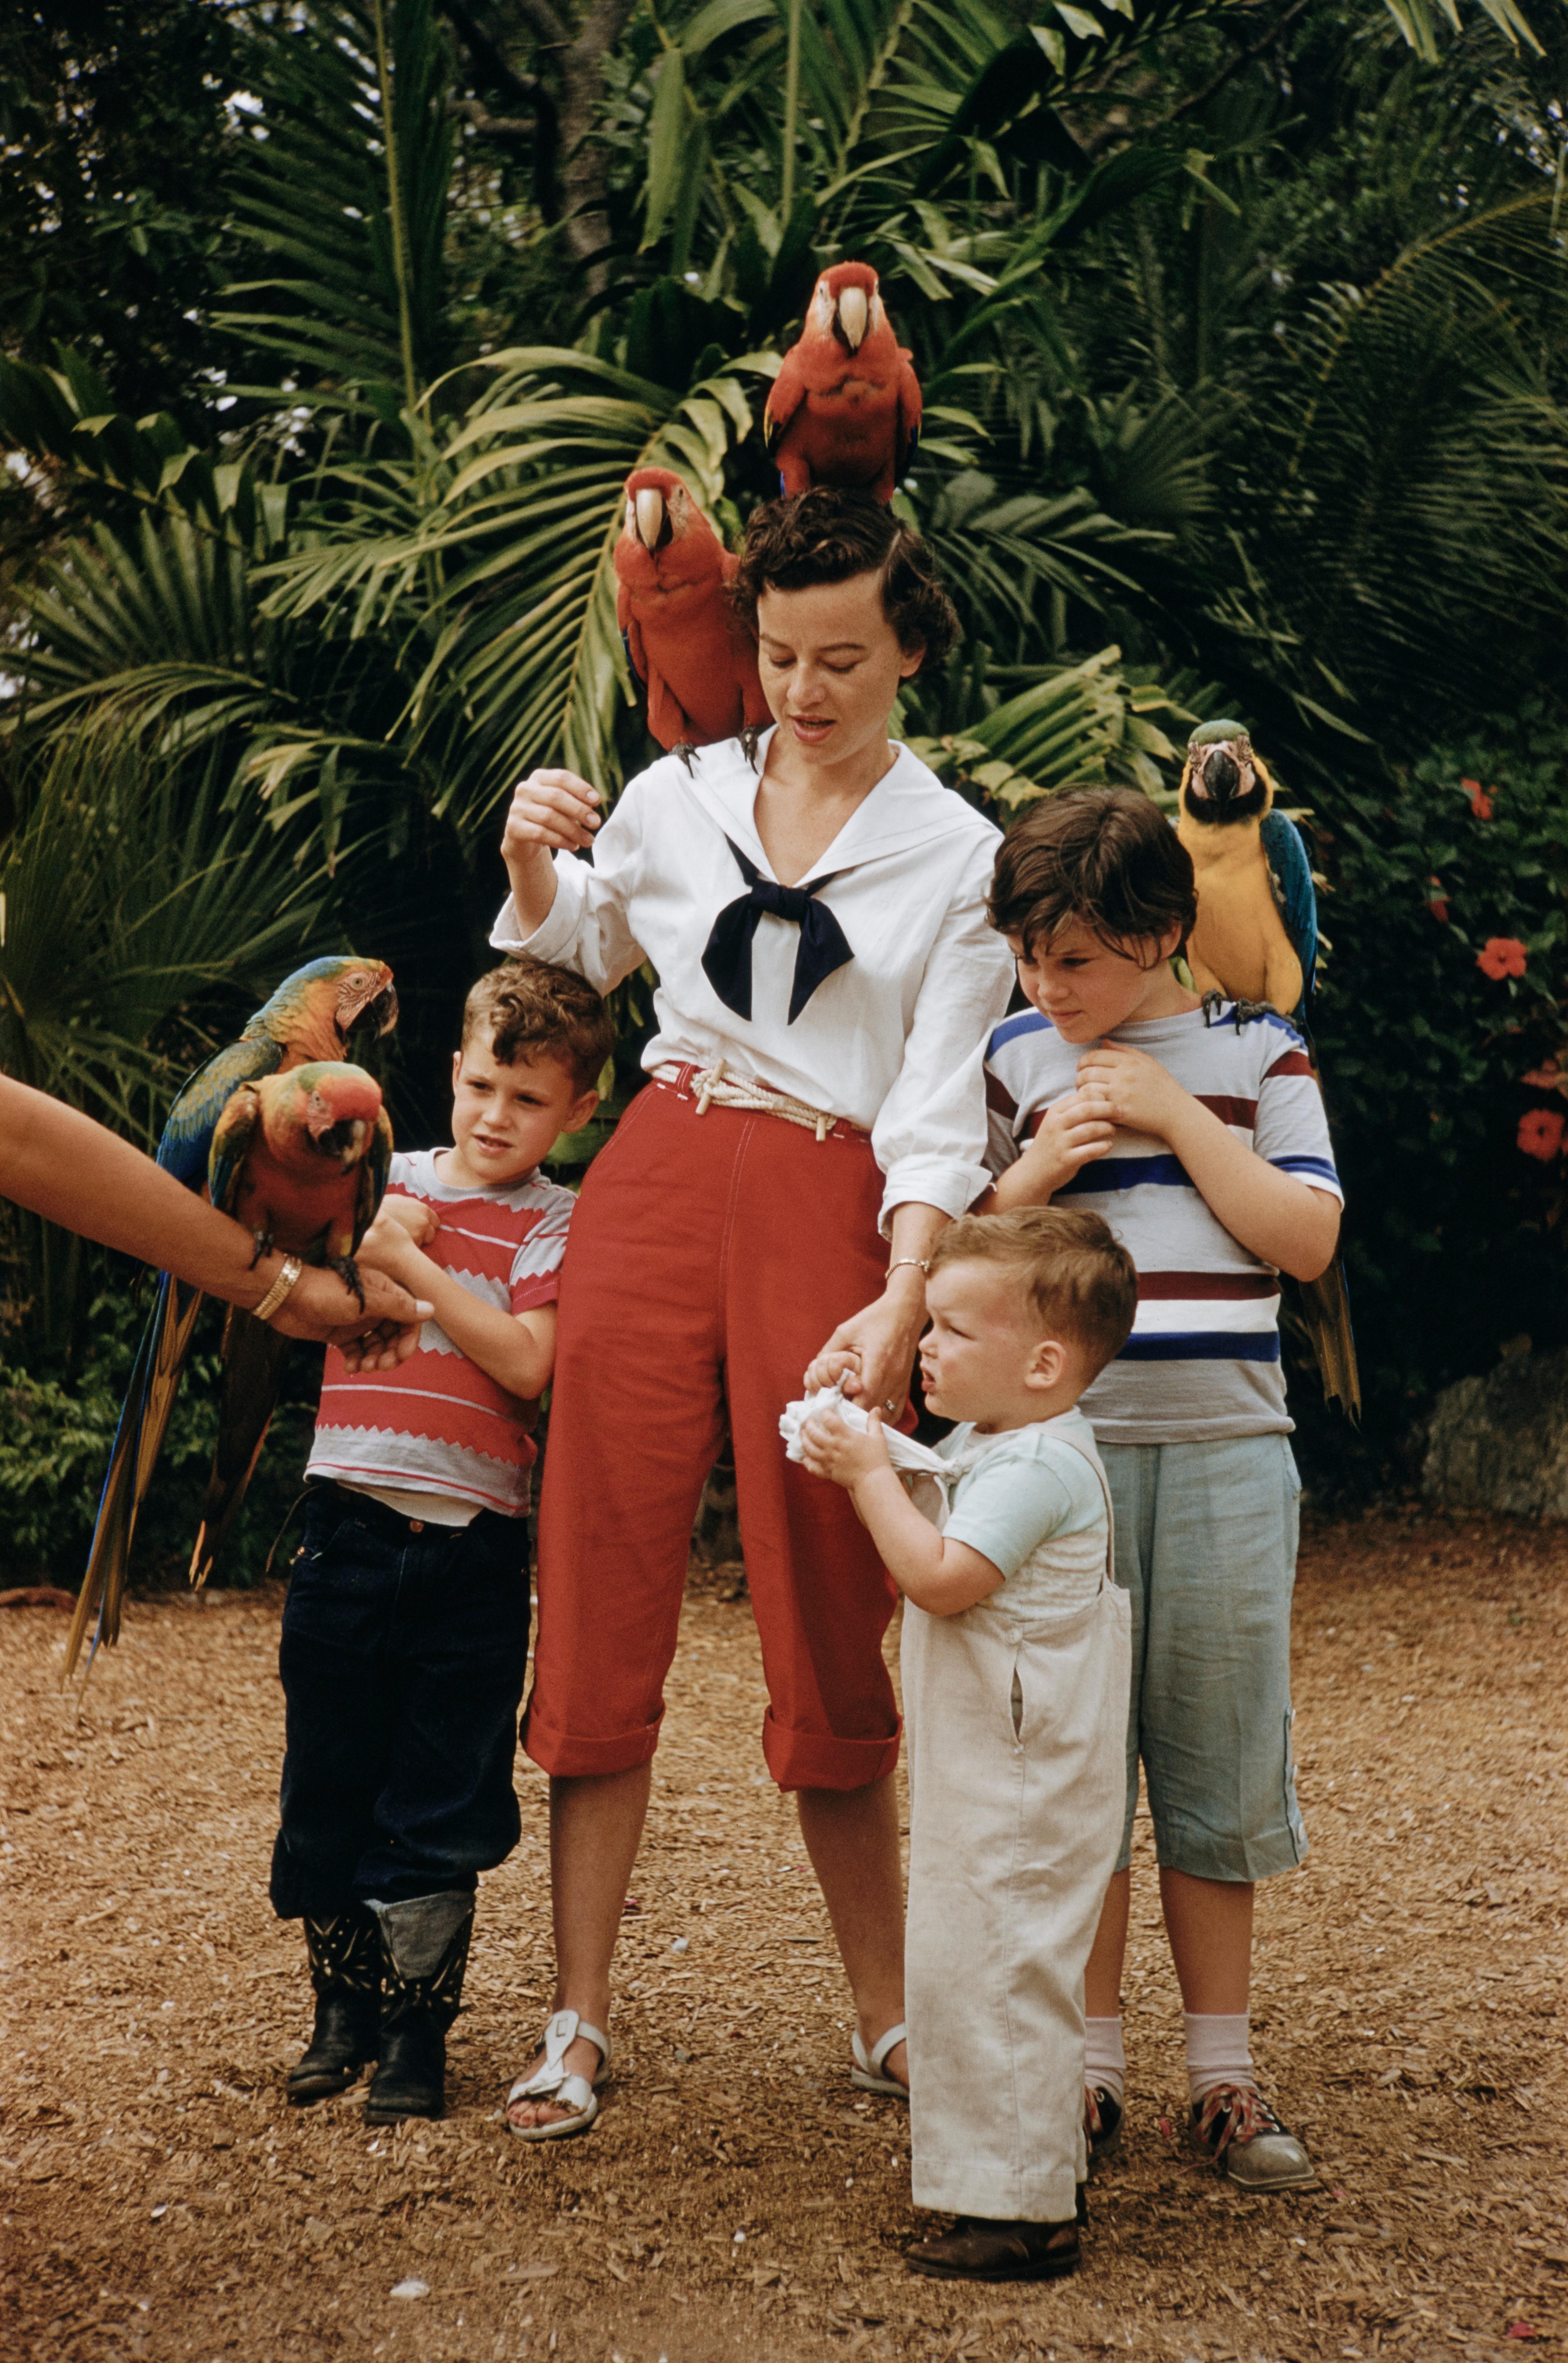 Slim Aarons Color Photograph - Parrot Jungle amusement park near Miami